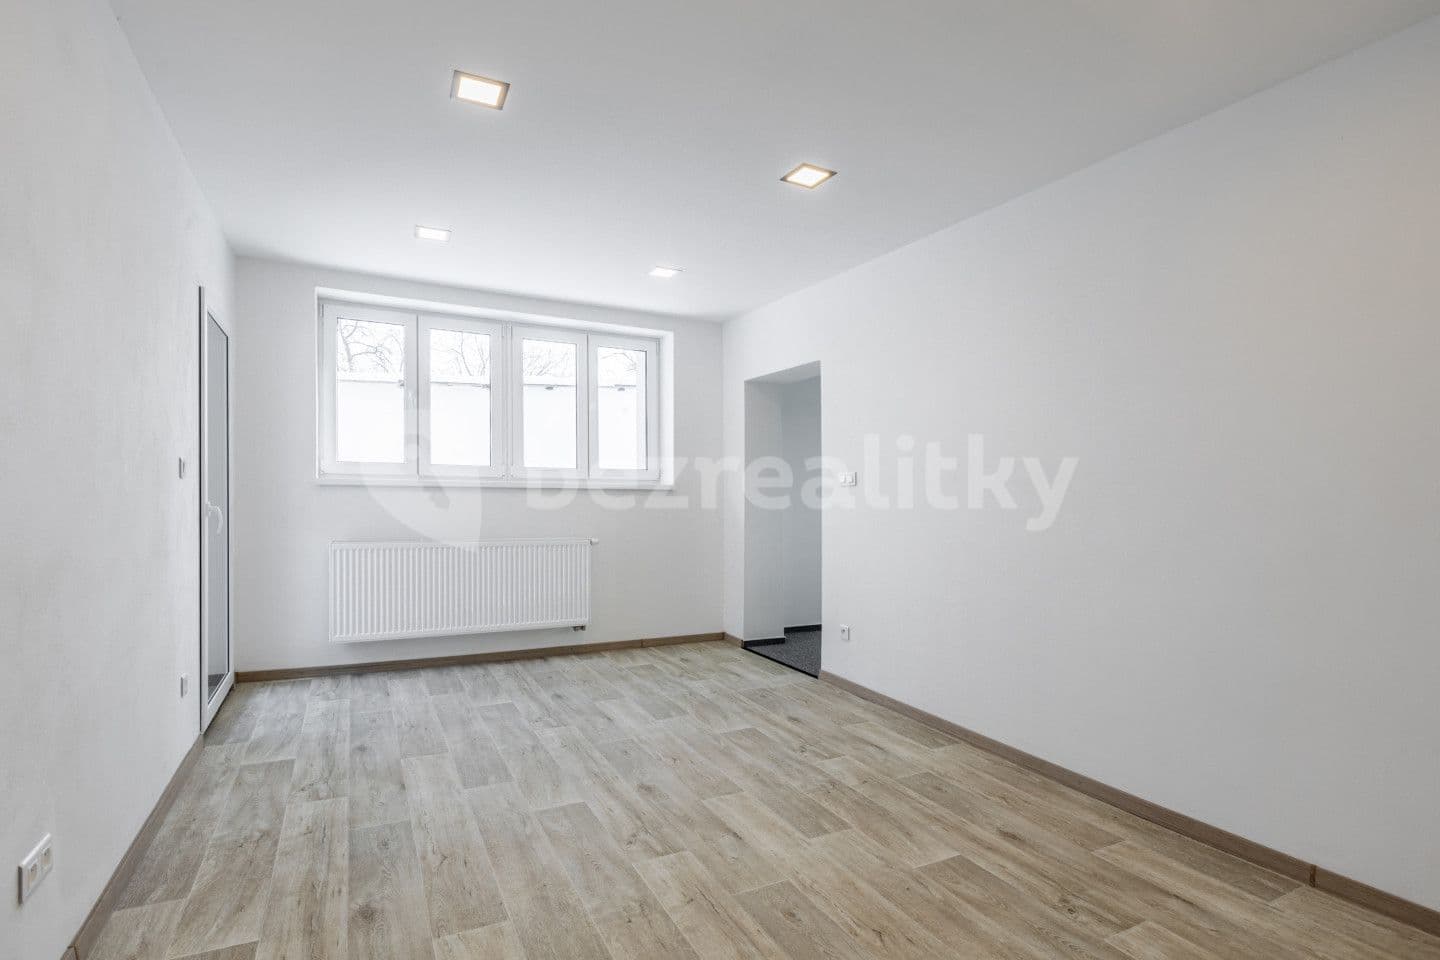 1 bedroom with open-plan kitchen flat for sale, 49 m², Slavětín nad Metují, Královéhradecký Region